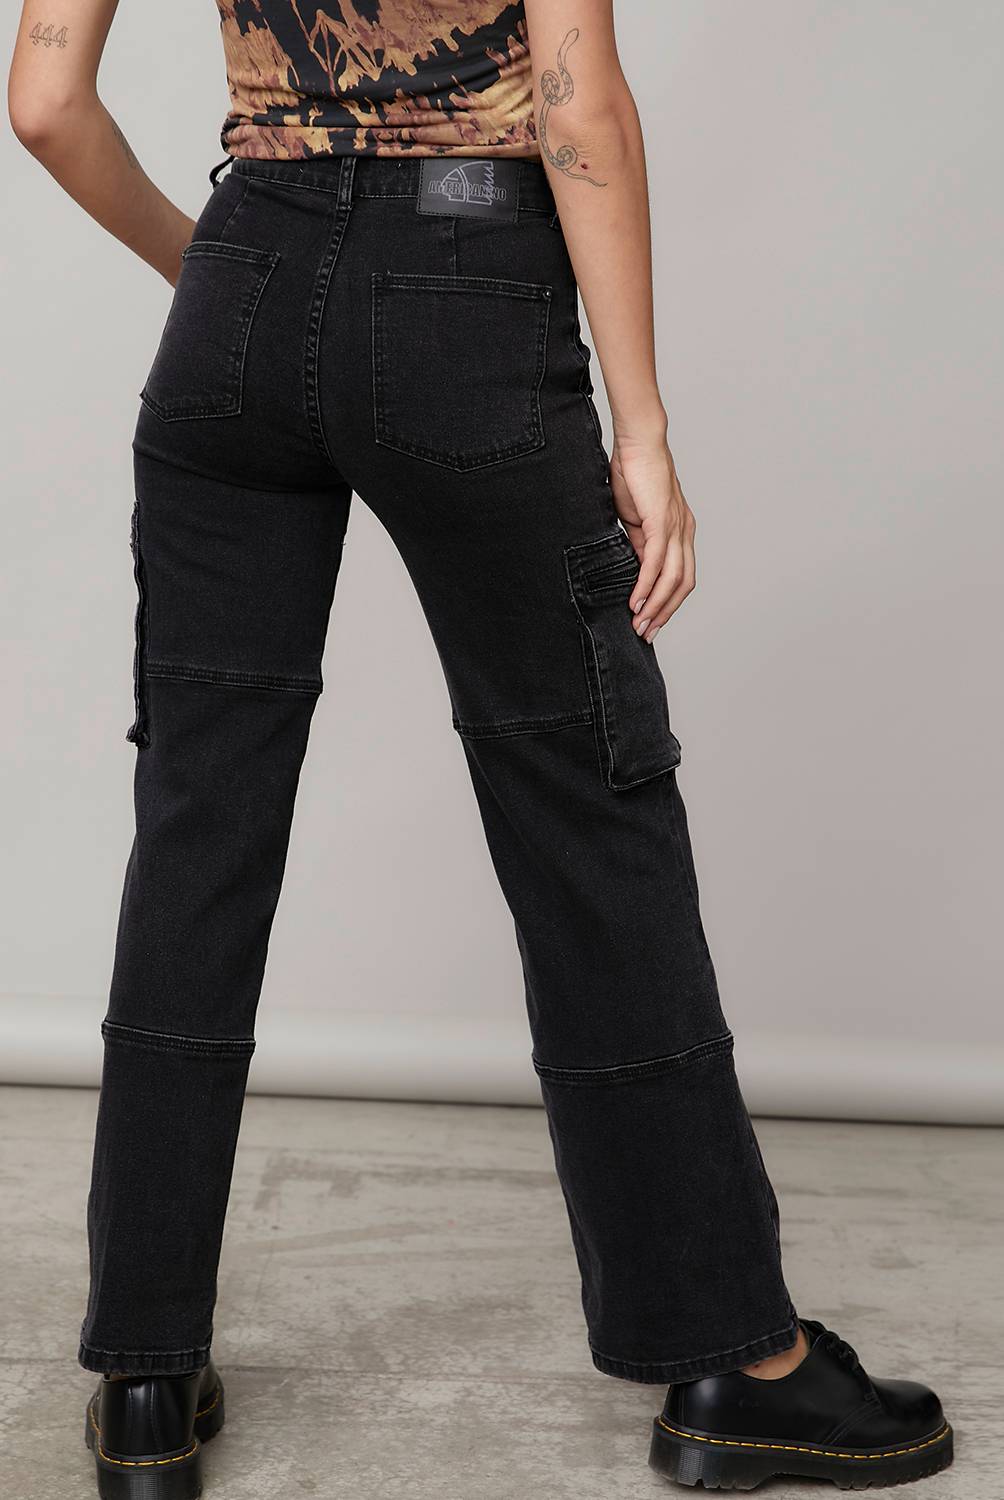 AMERICANINO - Jeans Cargo Tiro Medio Mujer Americanino